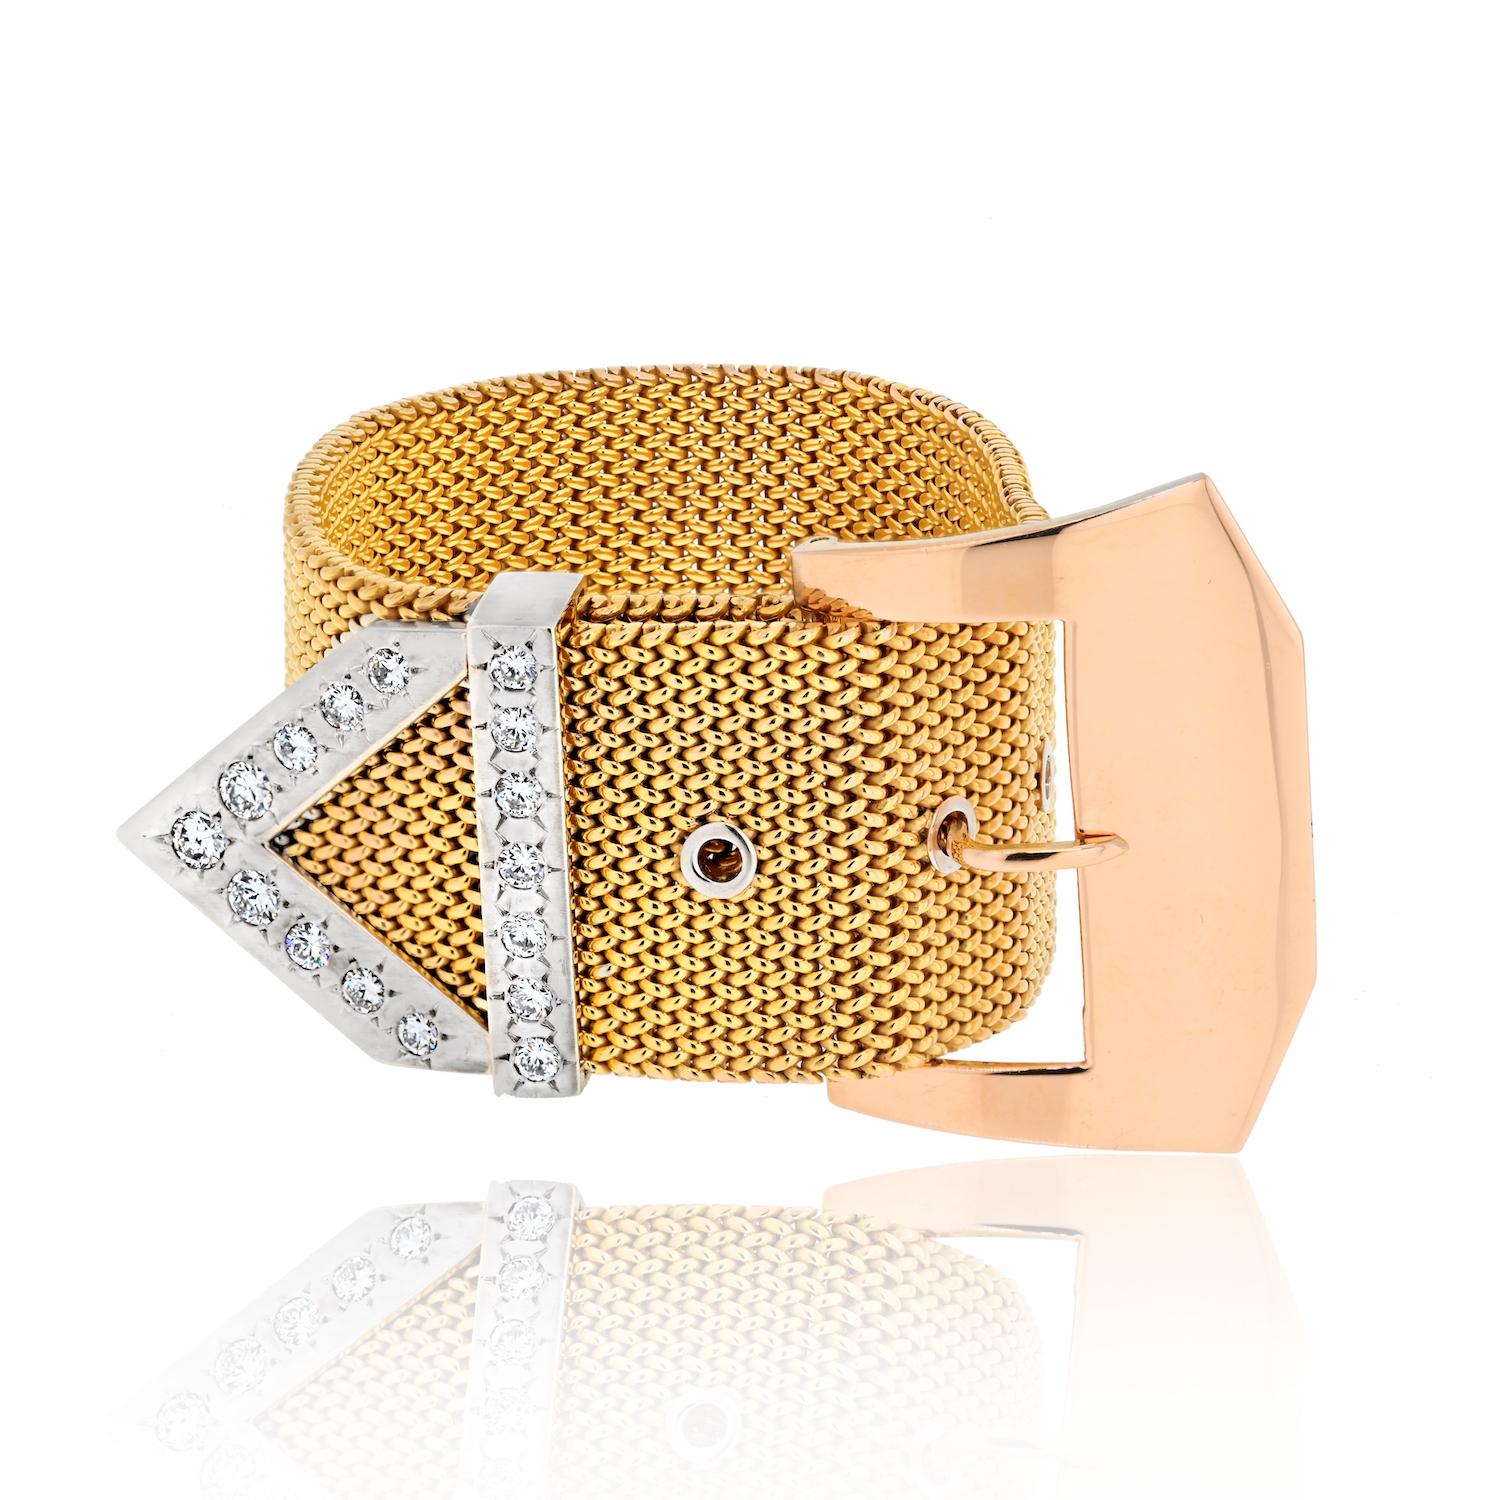 Erhöhen Sie Ihr Handgelenk mit der unverwechselbaren Anziehungskraft des Roberto Coin 18K Gelbgold Diamond Belt Buckle Armbands. 

Mit einer großzügigen Breite von 30 mm ist dieses Armband ein Ausdruck von Luxus und Stil. Ihr vielseitiges Design